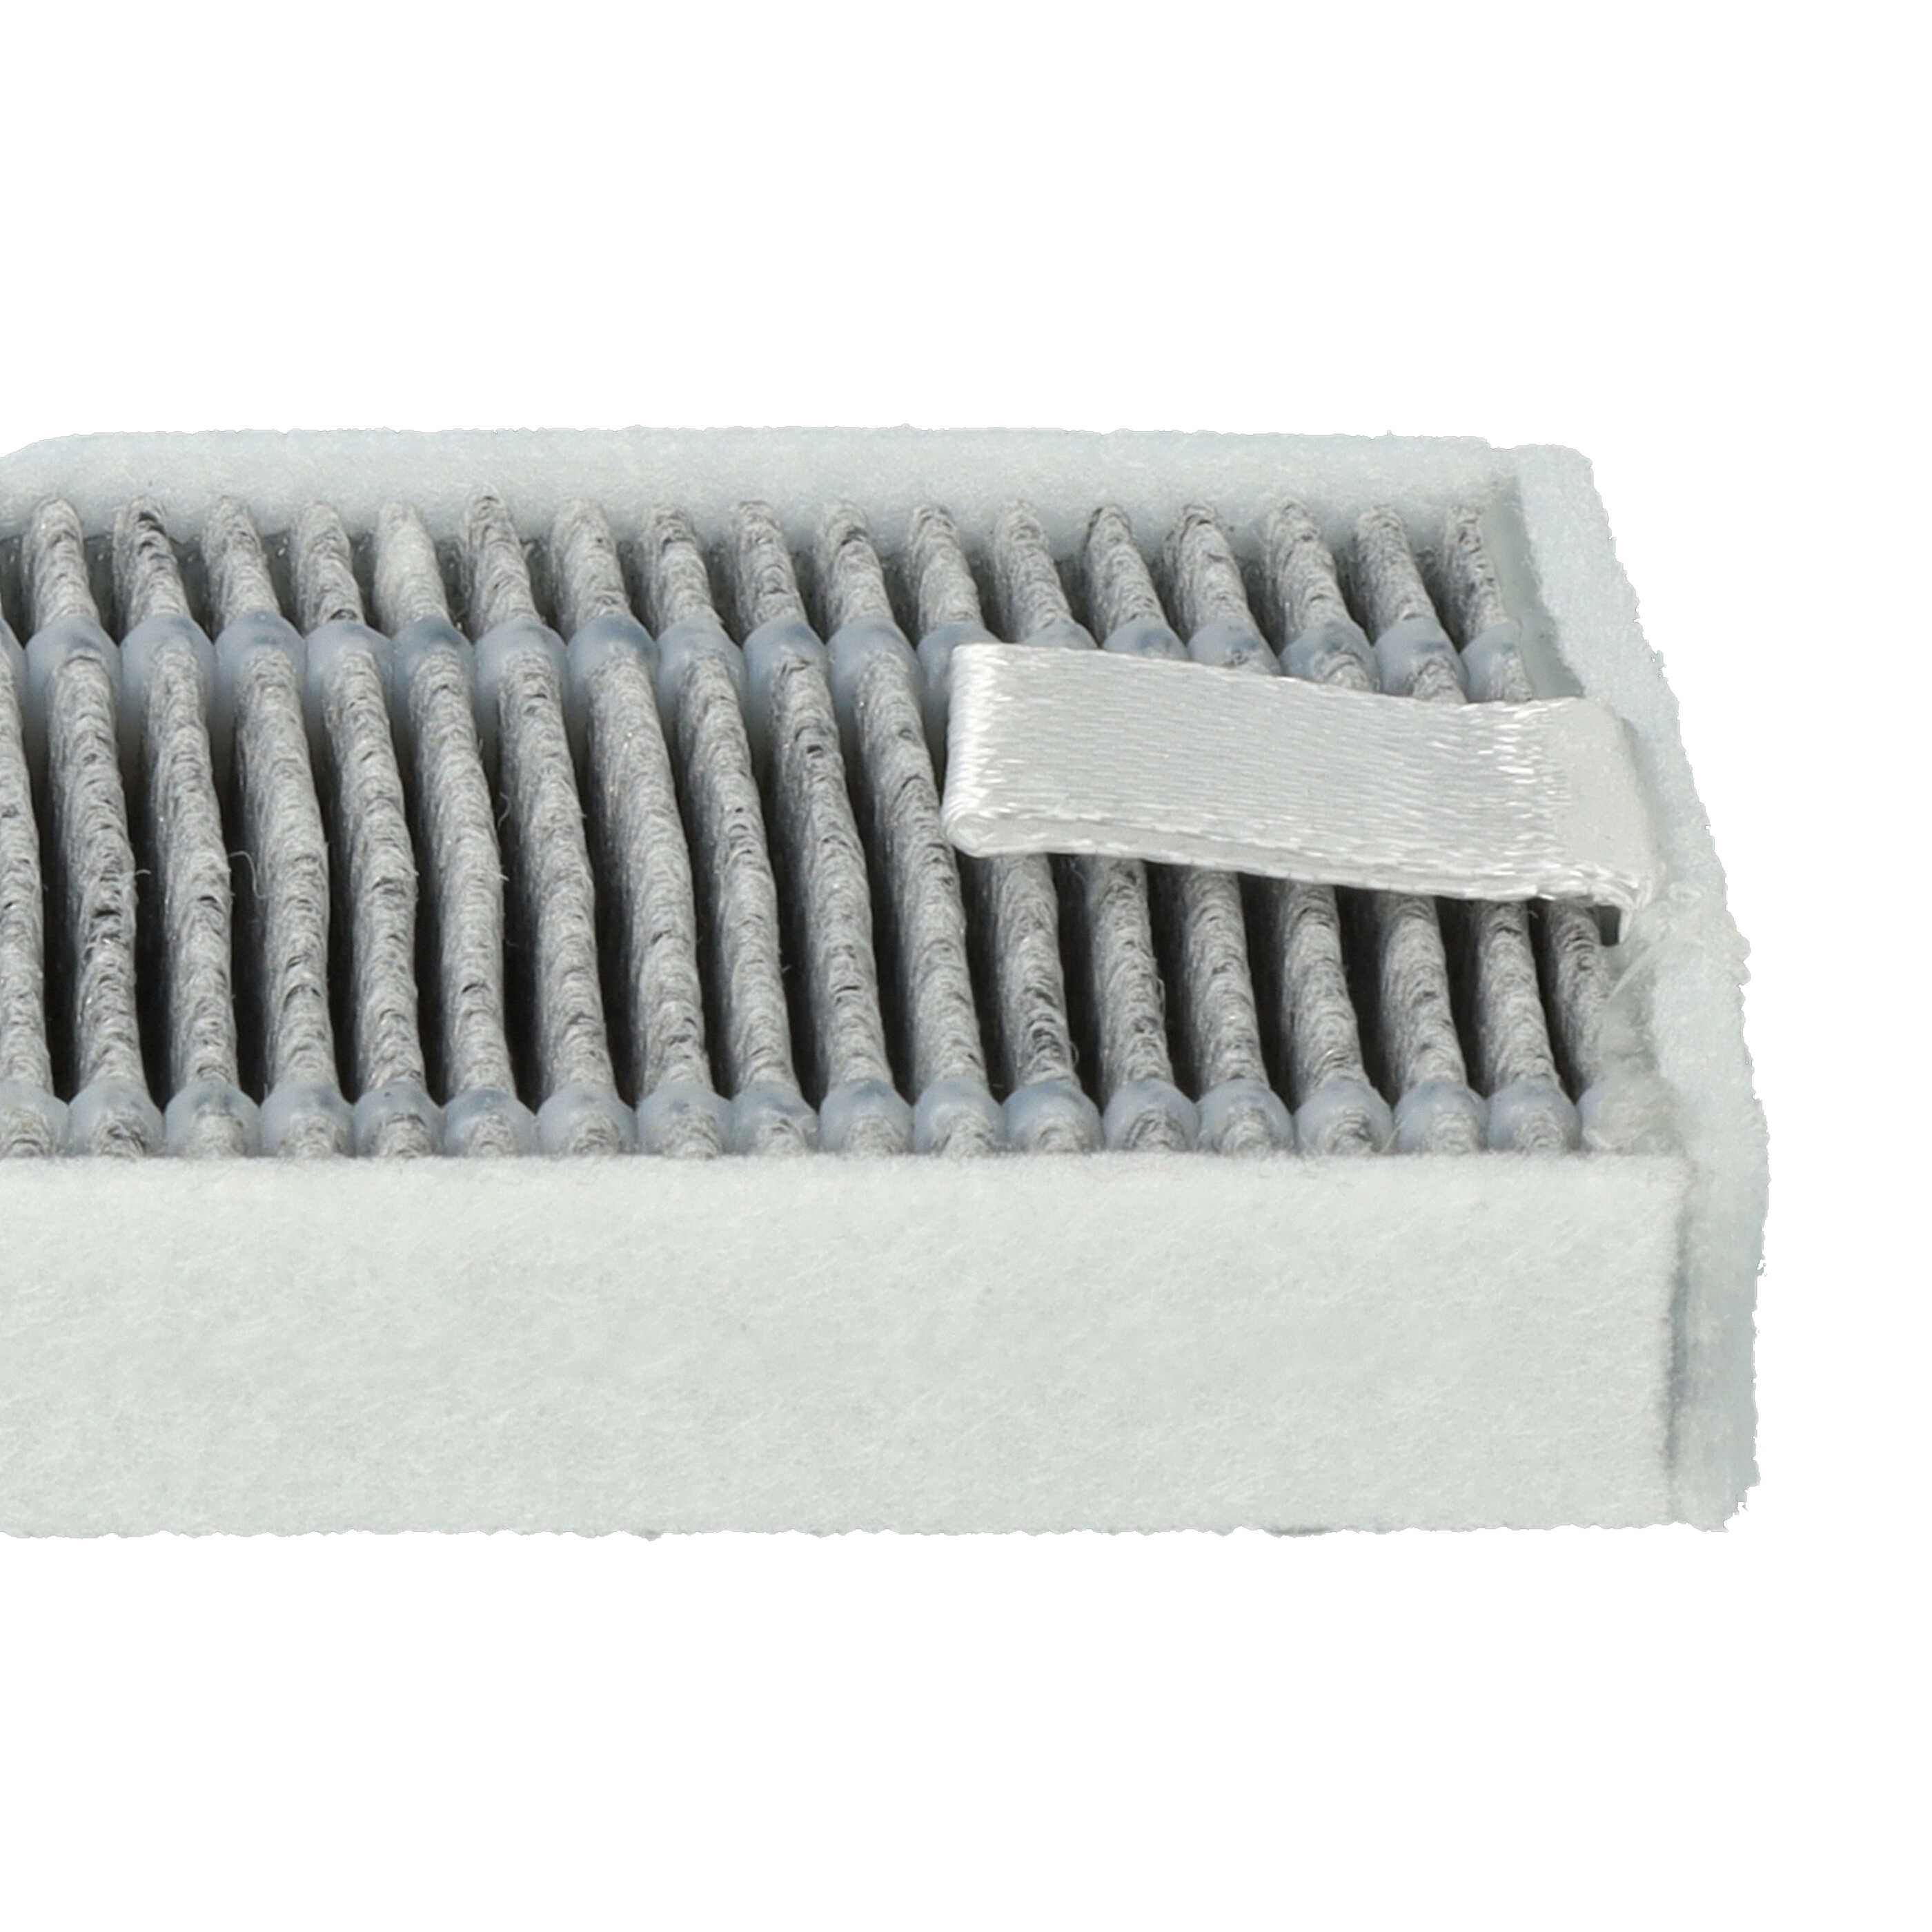 5x filtro carbón activo para robot aspirador Proscenic, Cecotec, Xiaomi M7 - 13 x 4 x 1 cm